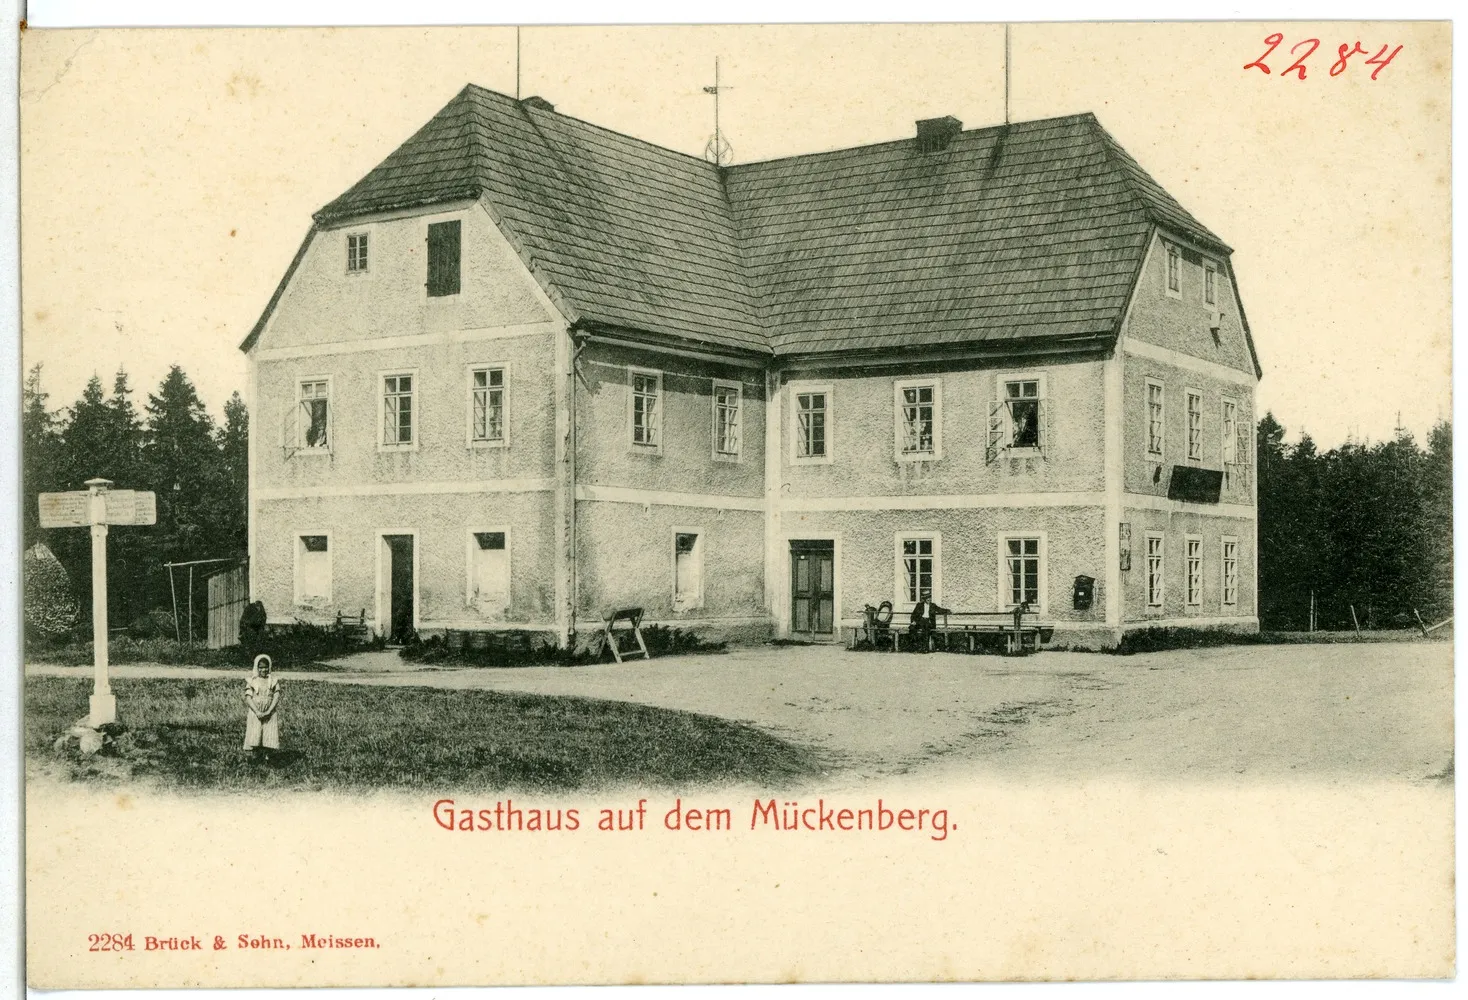 Photo showing: Mückenberg; Gasthaus auf dem Mückenberg